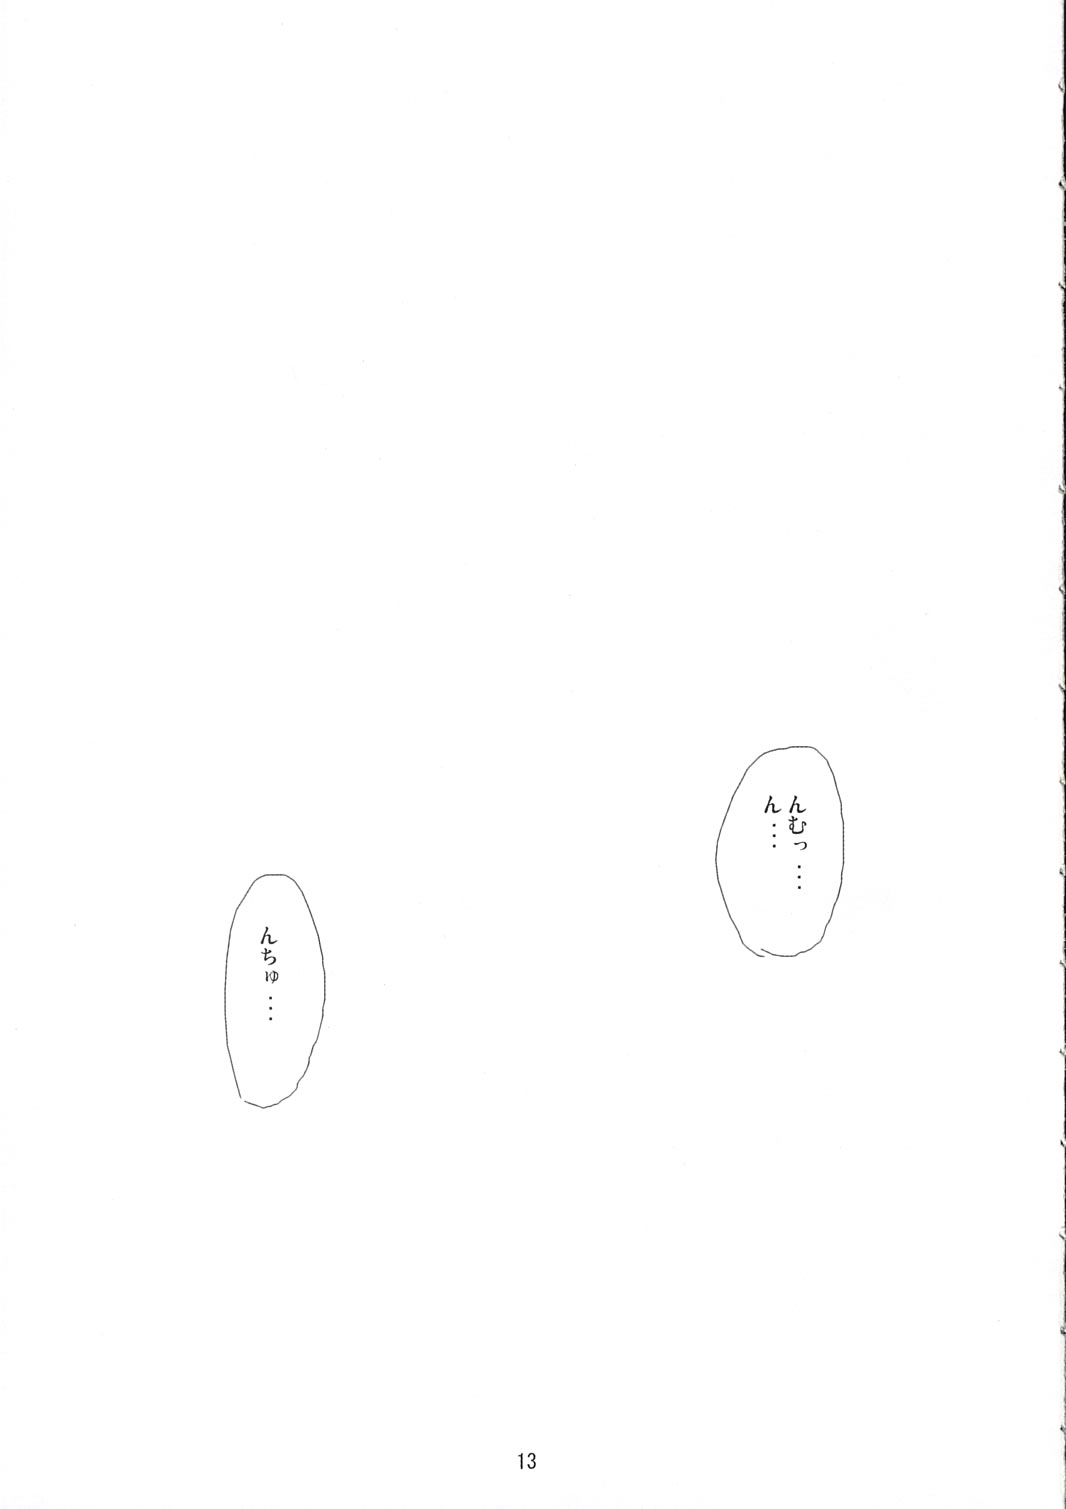 (サンクリ31) [FREE STYLE (水風天)] White Dance (トゥハート2、かみちゅ!)